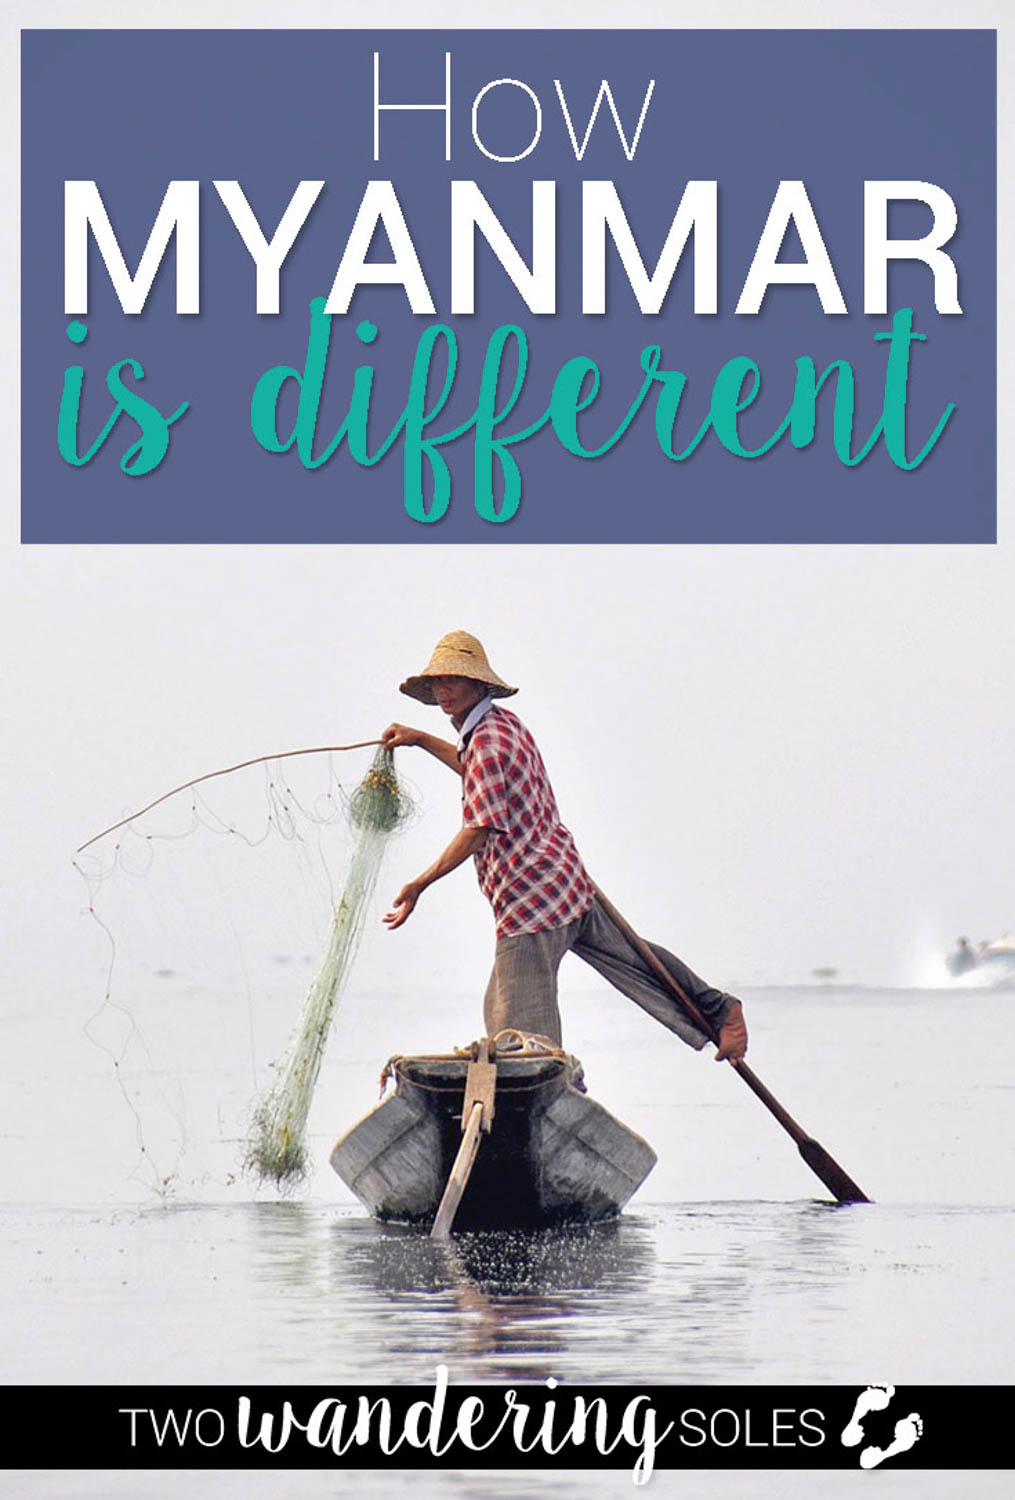 缅甸和我们去过的其他国家有什么不同